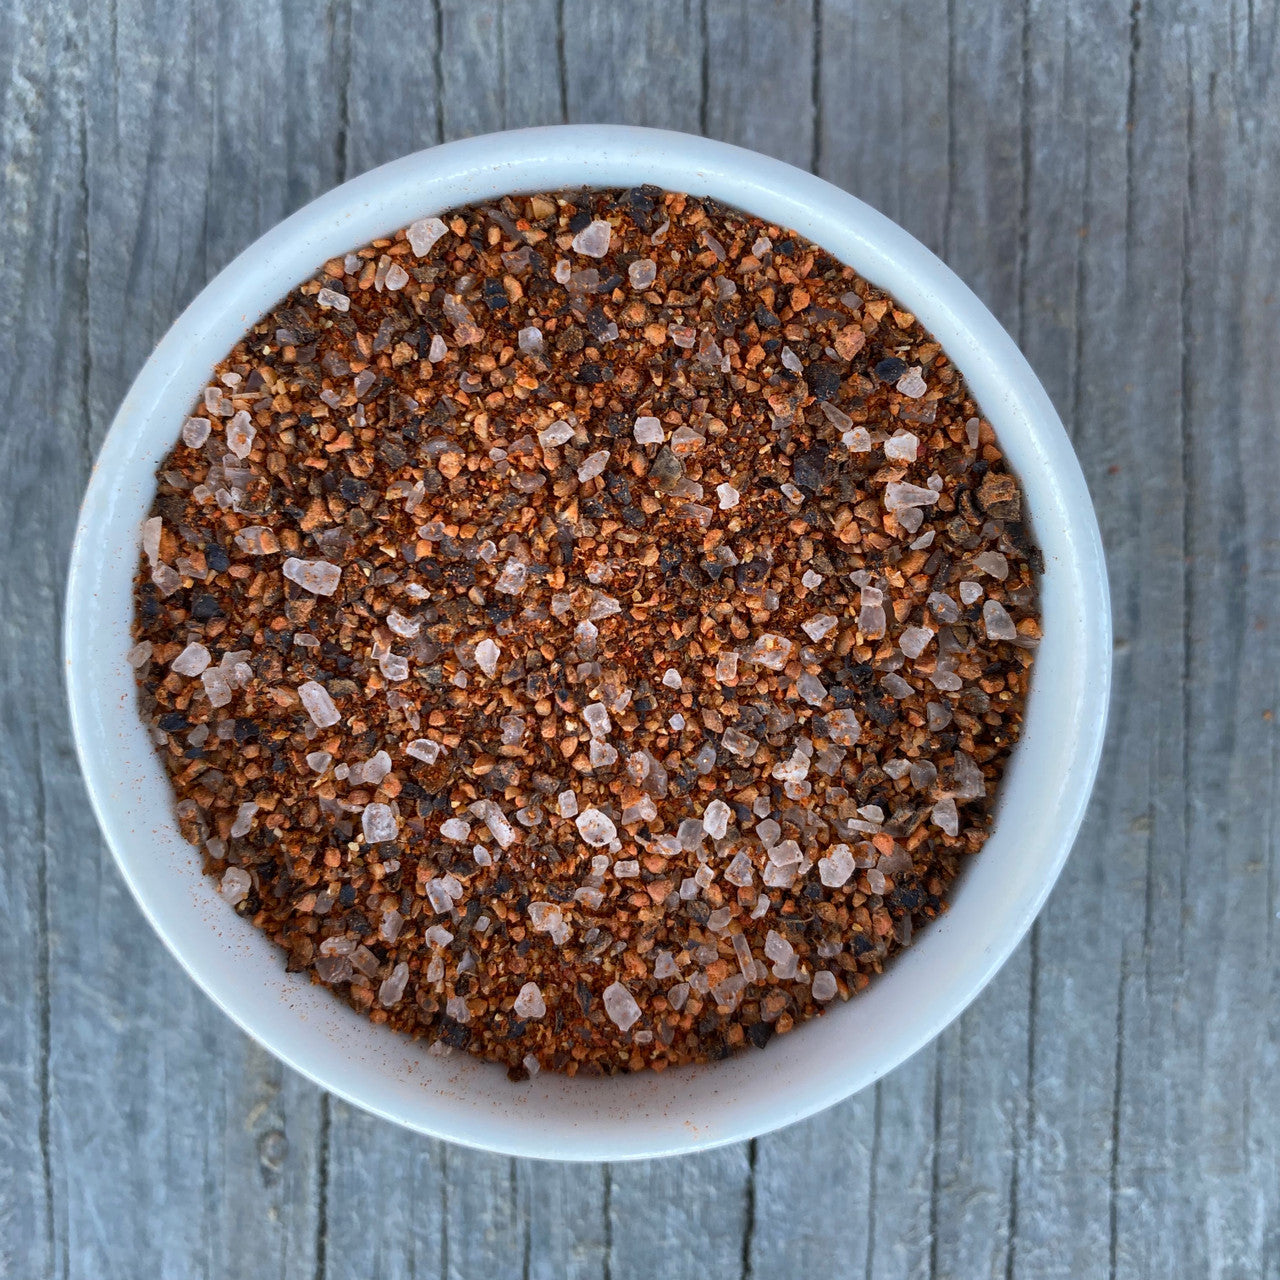 Salt & Pepper Seasoning Mixture/Blend